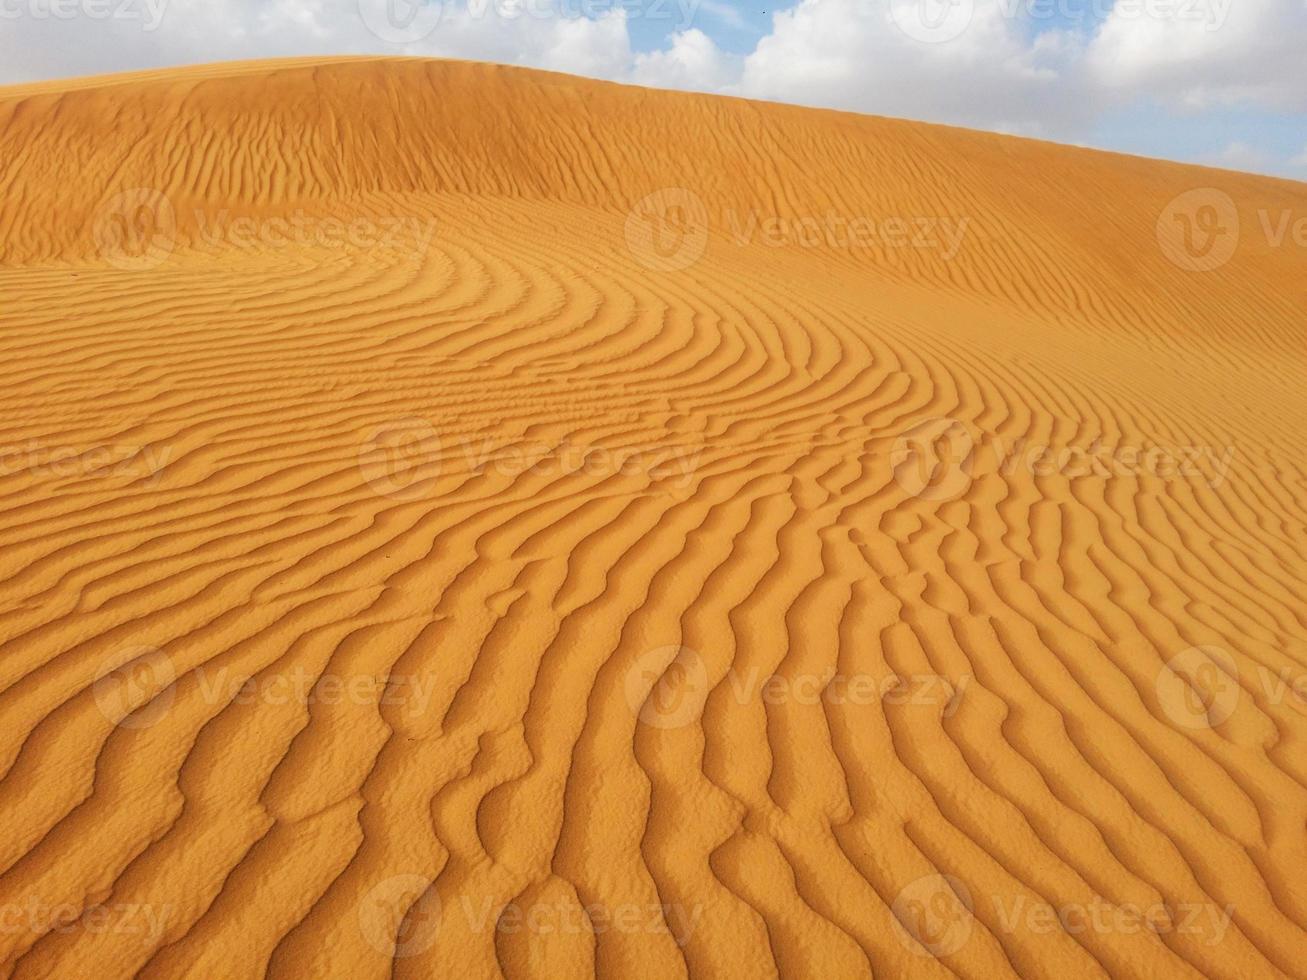 Sand dunes in the desert photo